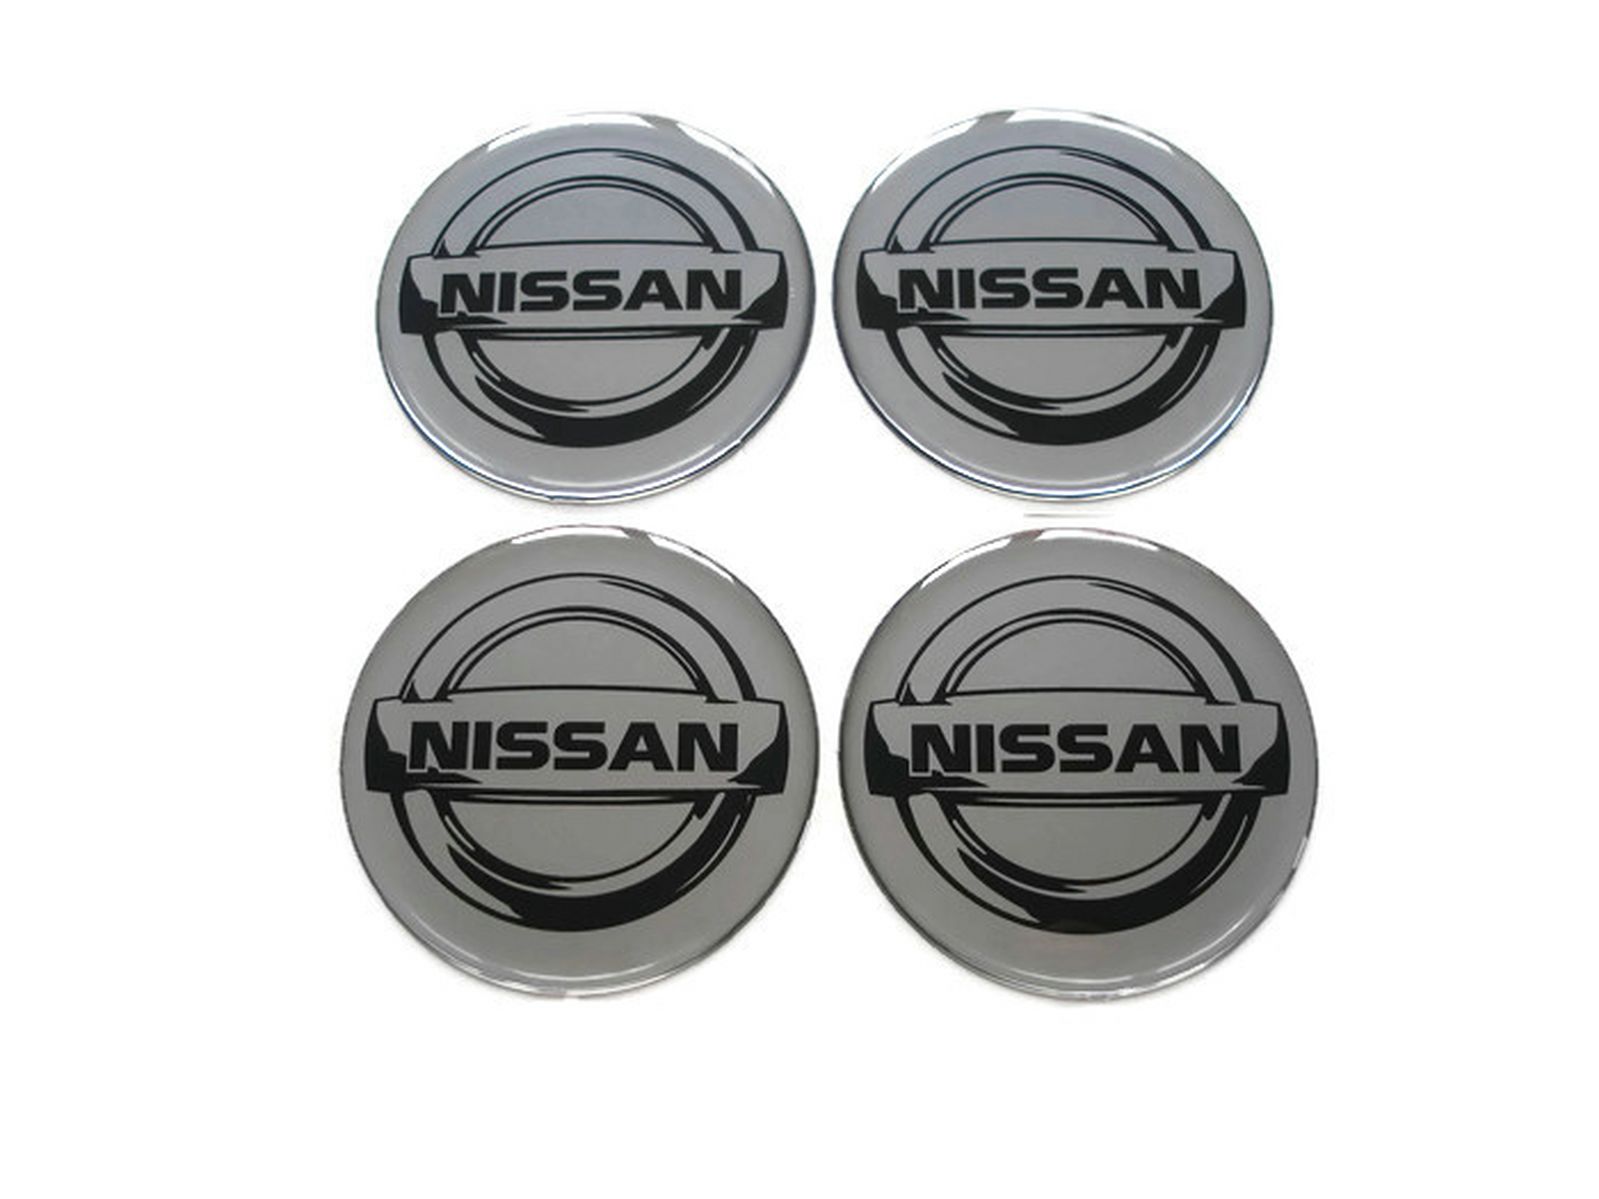 Логотип колпачка на диск. Крышка диска Nissan 55 mm Avenir. Наклейки на диски. Наклейки на колесные колпачки Ниссан. Эмблема Ниссан на колесные диски.